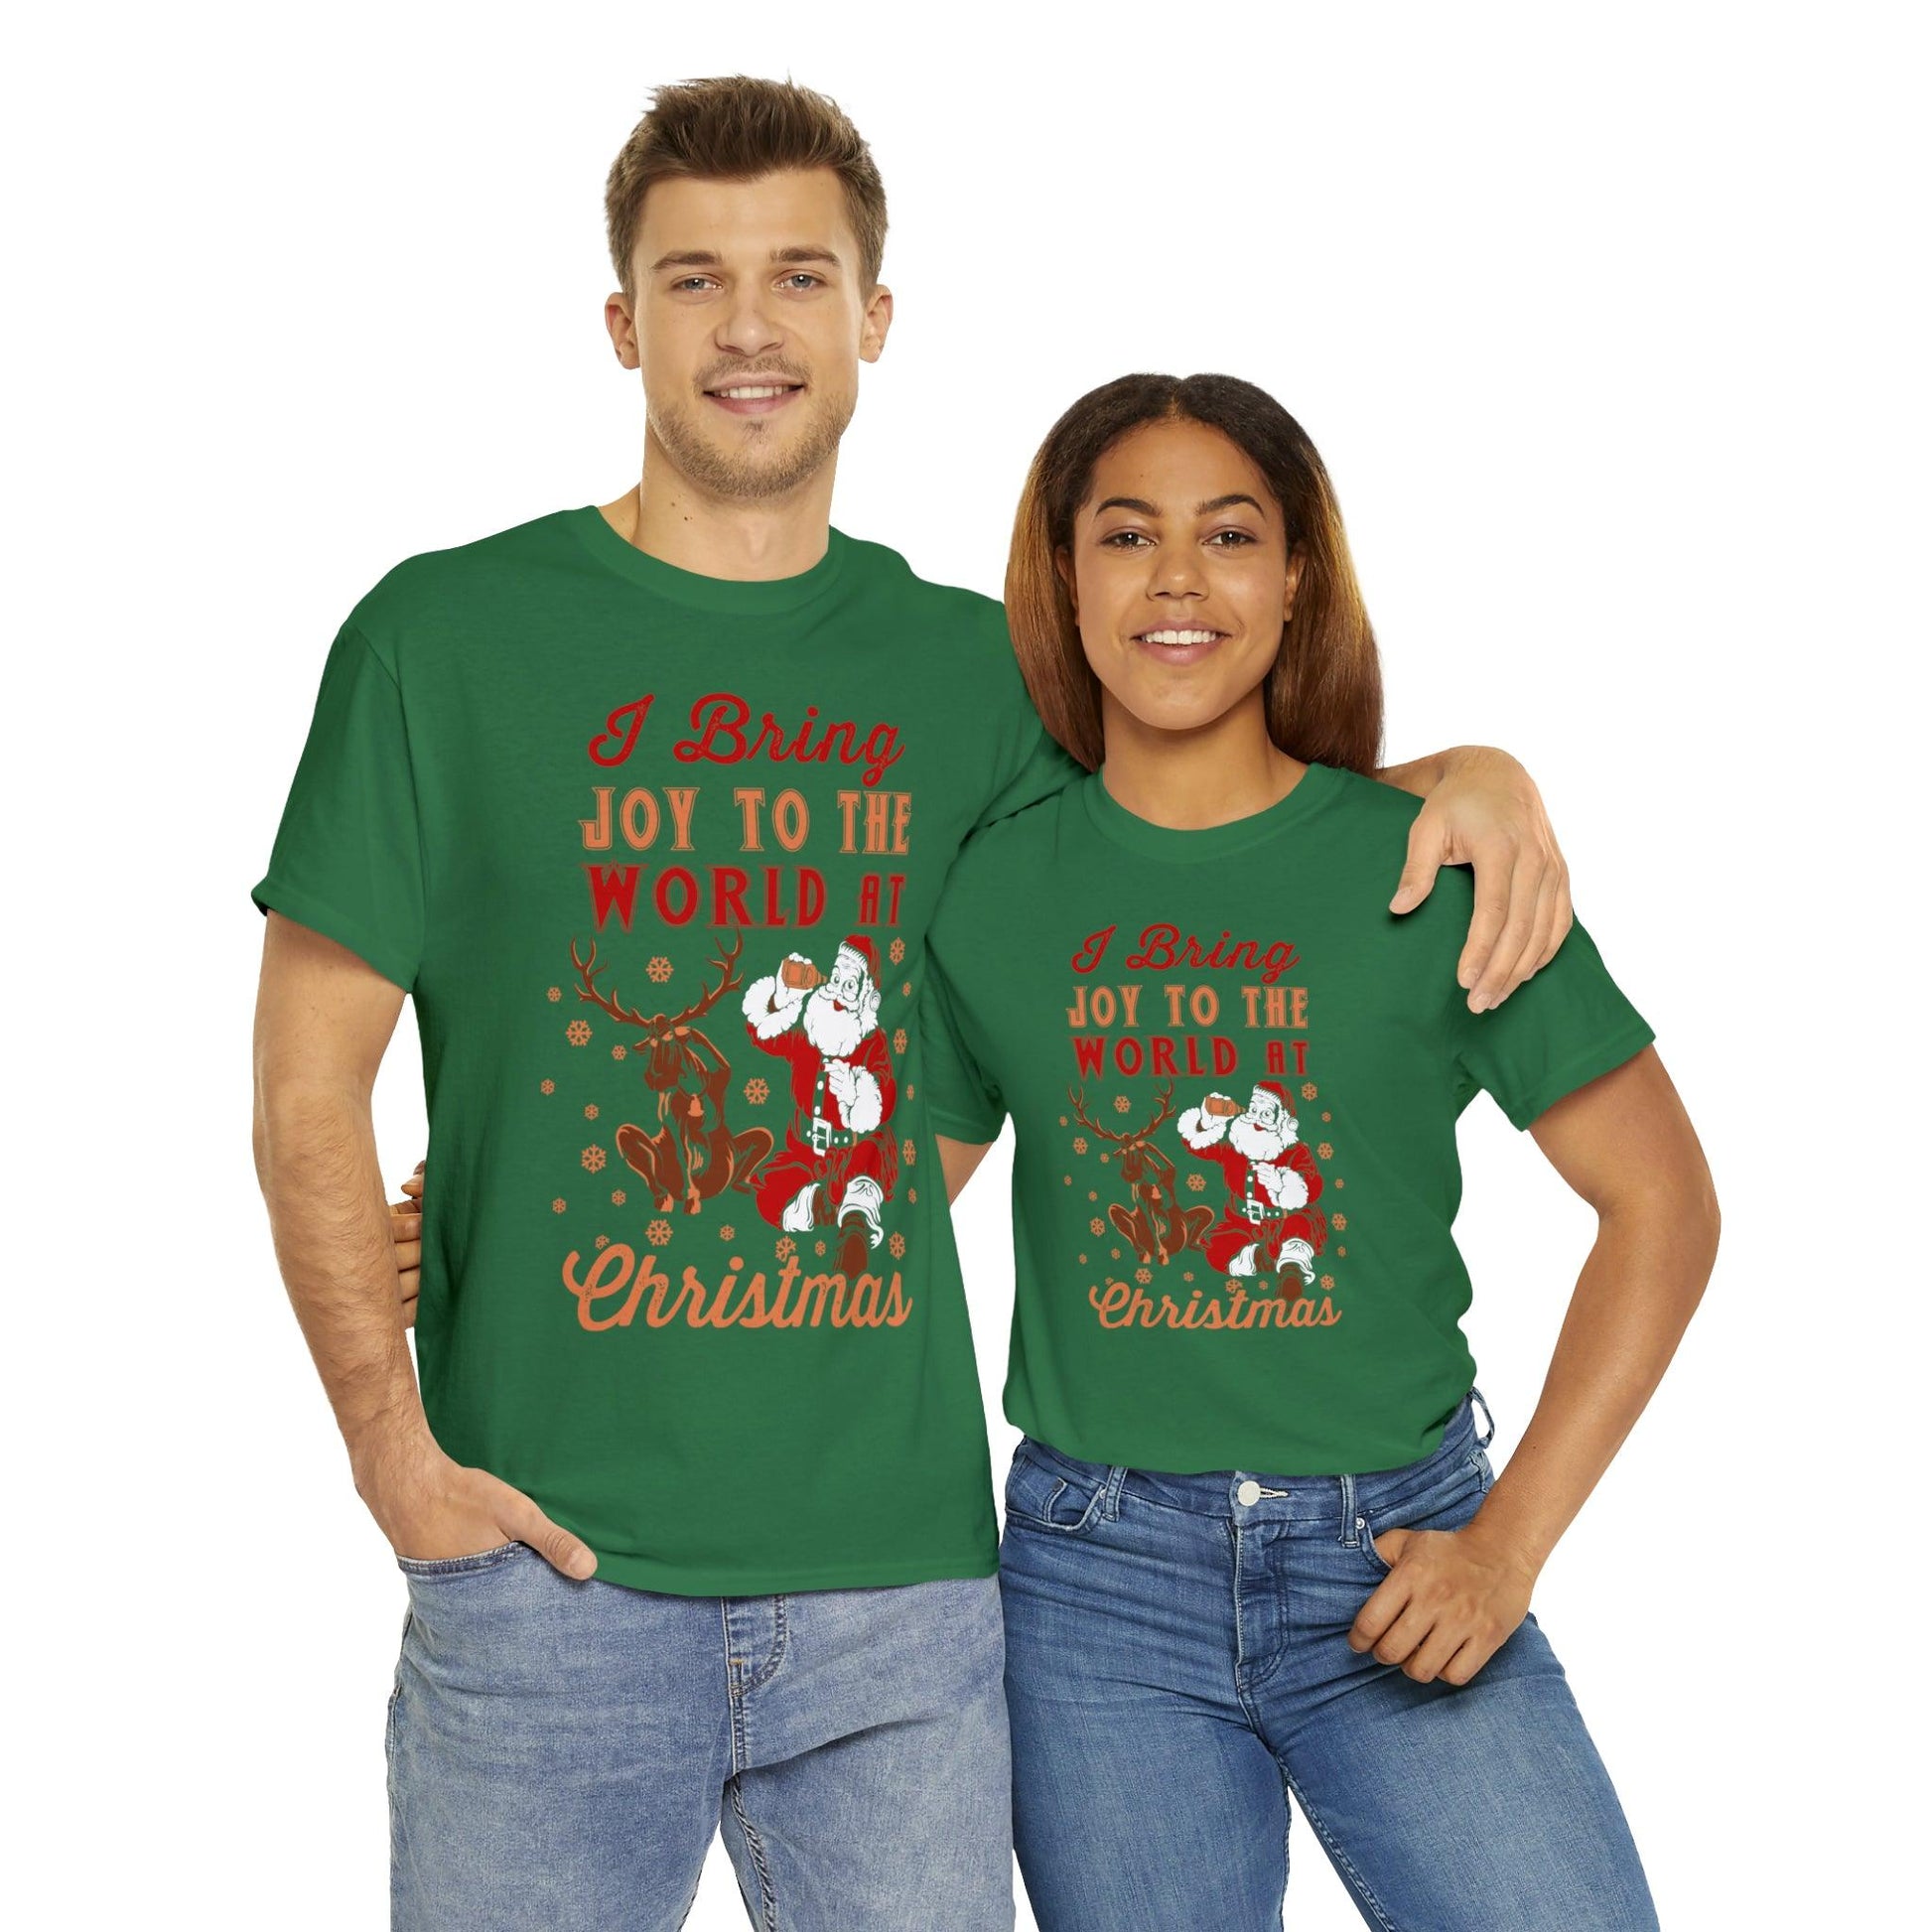 I bring Joy to the World at Christmas Shirt, Christmas Tee Christmas outfit, Christmas gifts - Giftsmojo